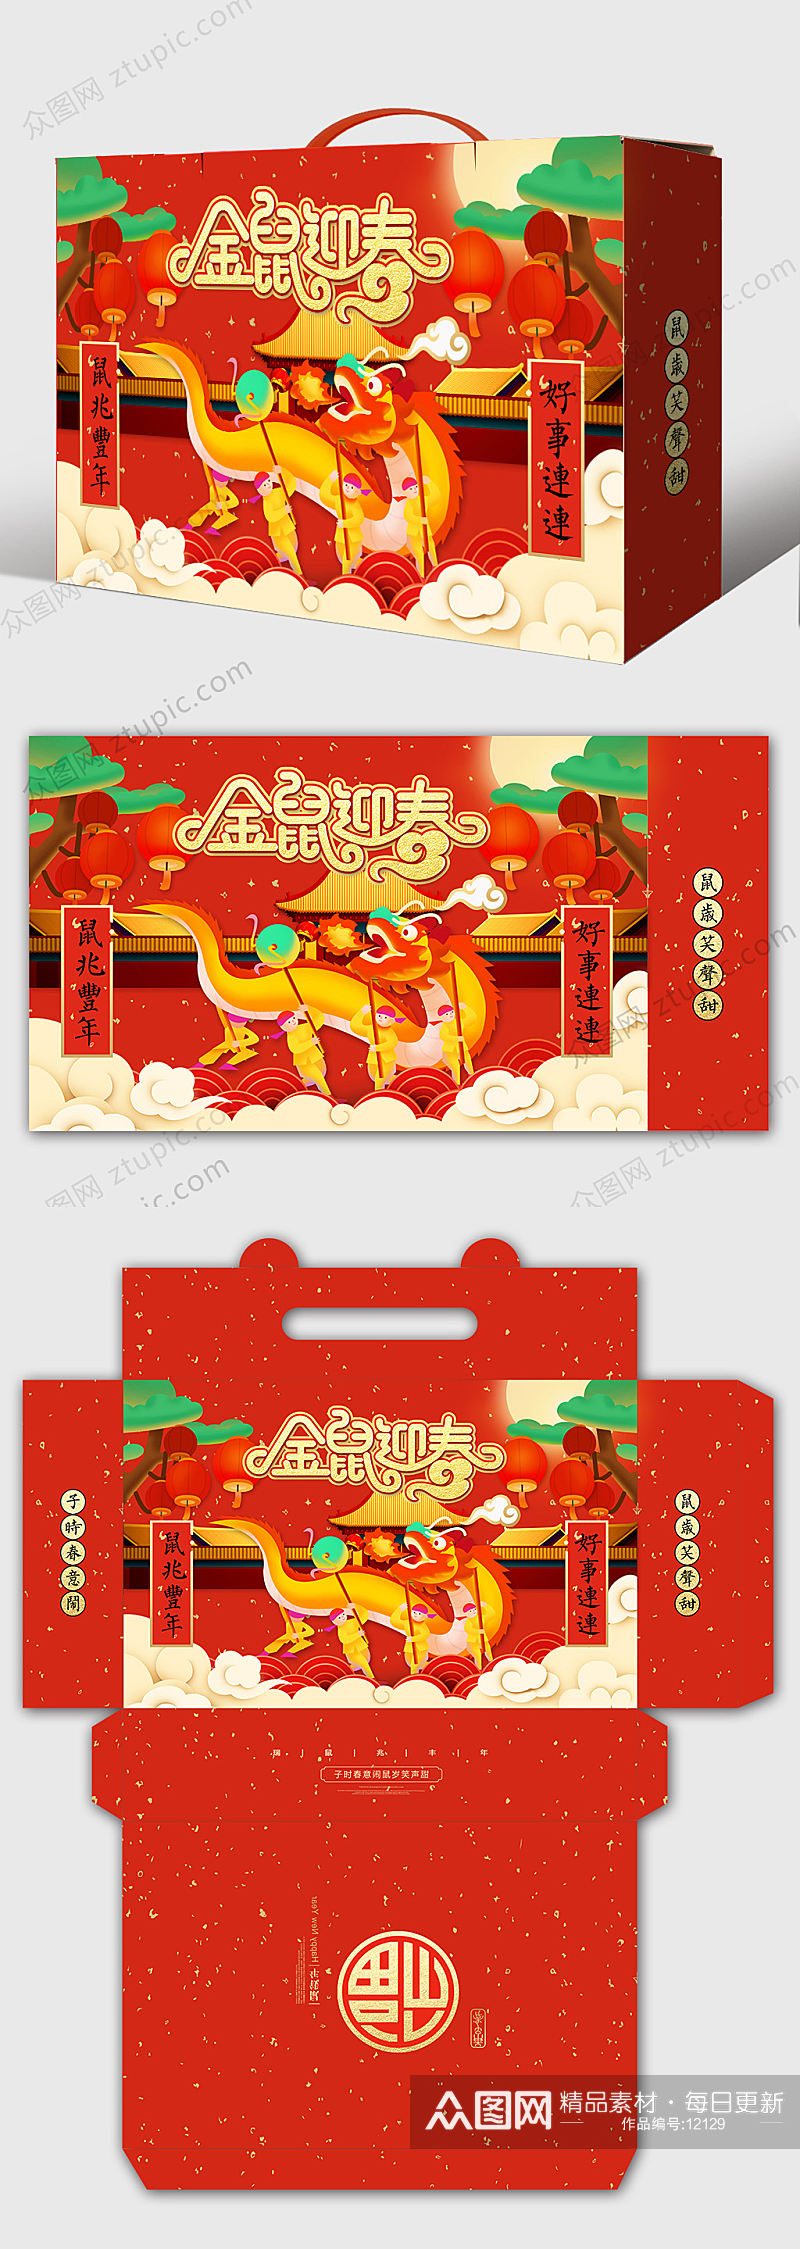 龙舞祥云新年包装礼盒设计素材